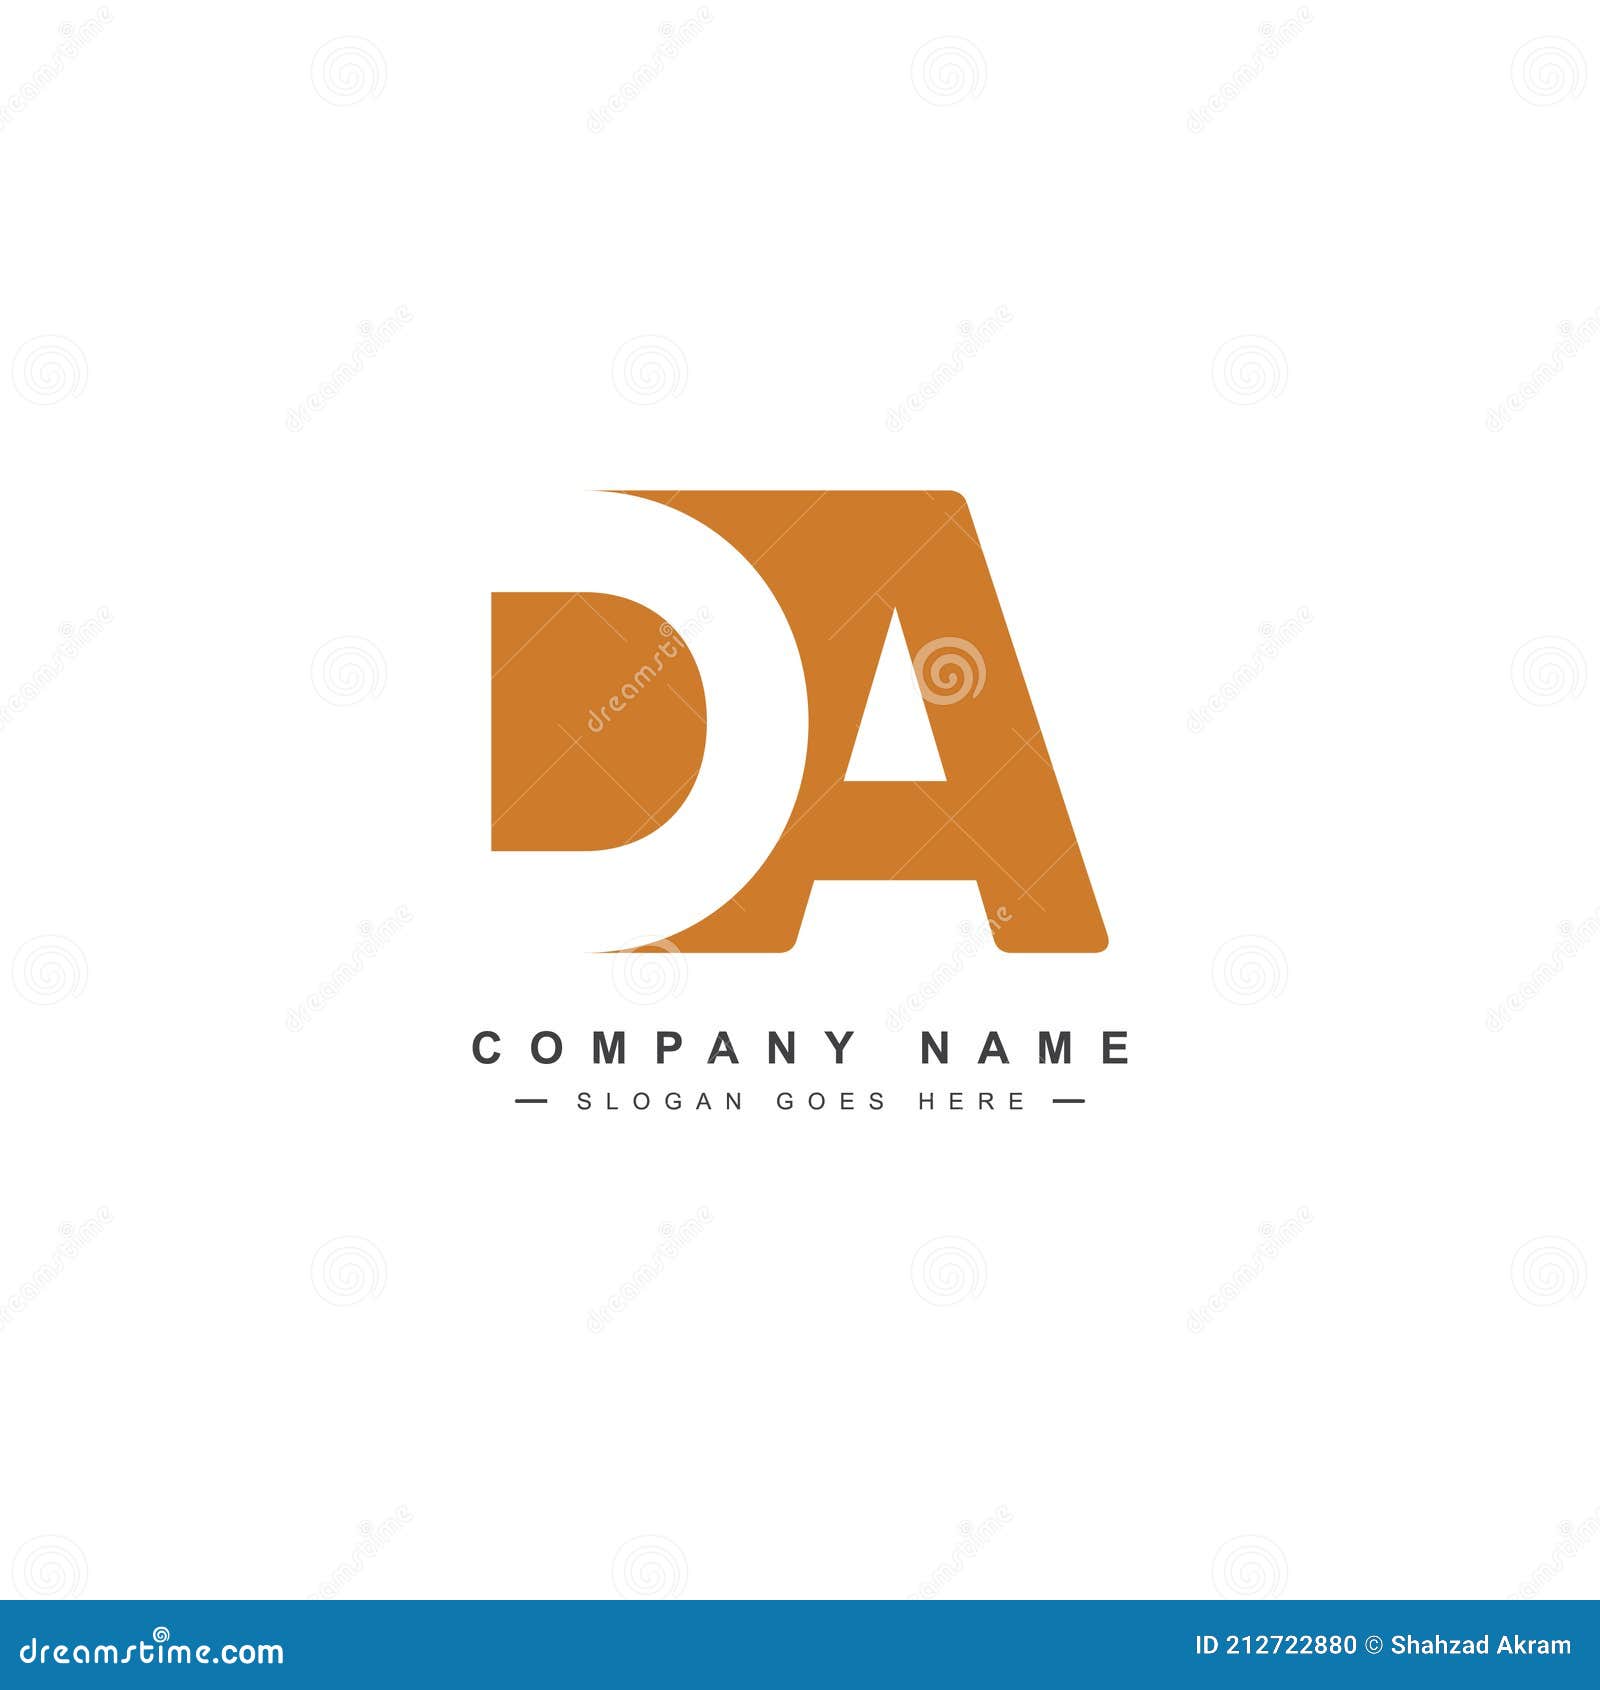 D + A Logo by Amir Hamja Fahim on Dribbble